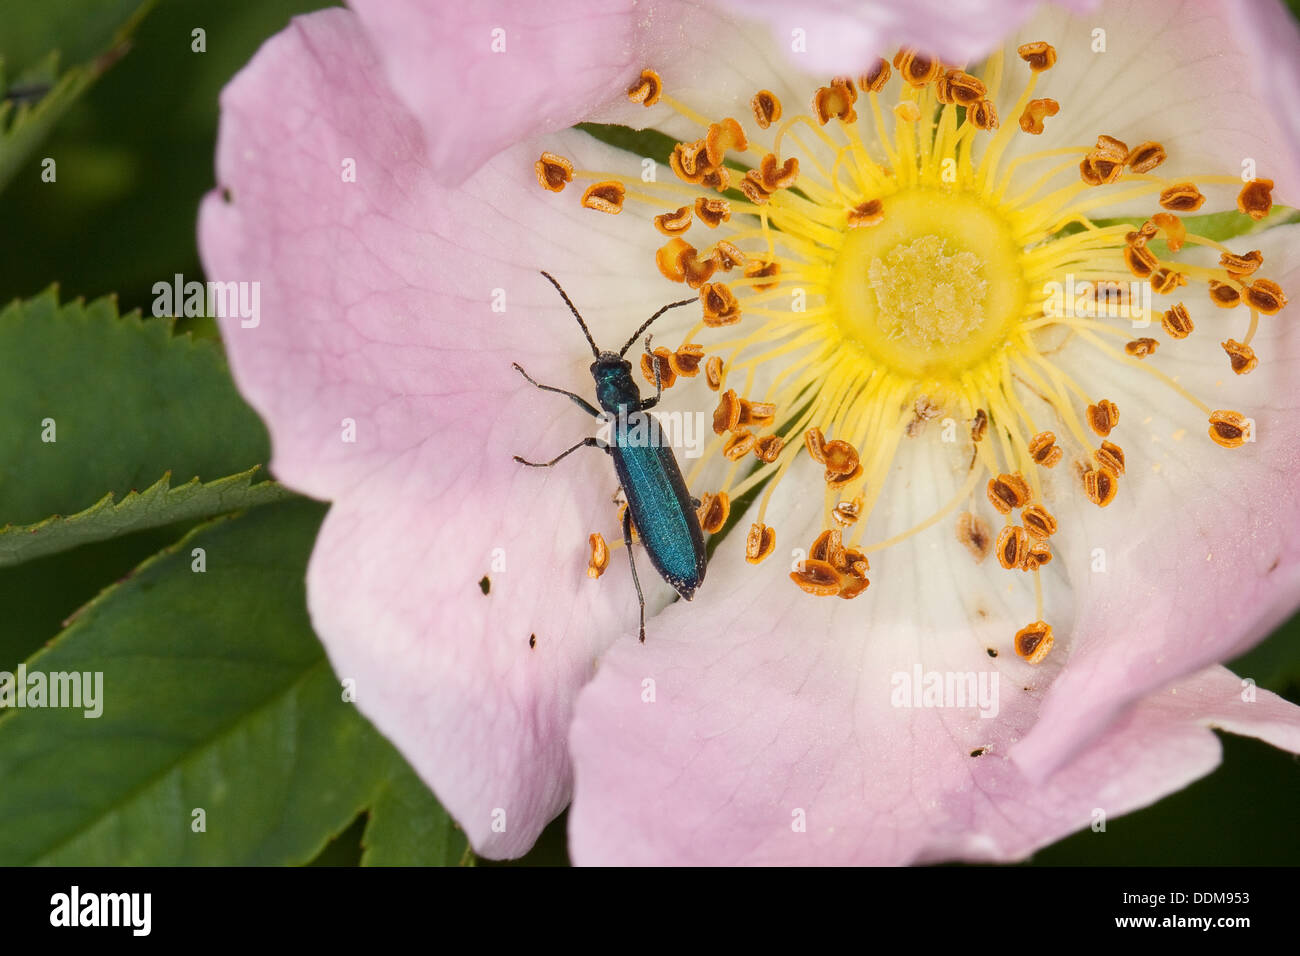 Pollen-feeding Beetle, Thick-legged Flower Beetle, Blauer Scheinbockkäfer, Ischnomera spec., Asclera spec., Oedemeridae Stock Photo